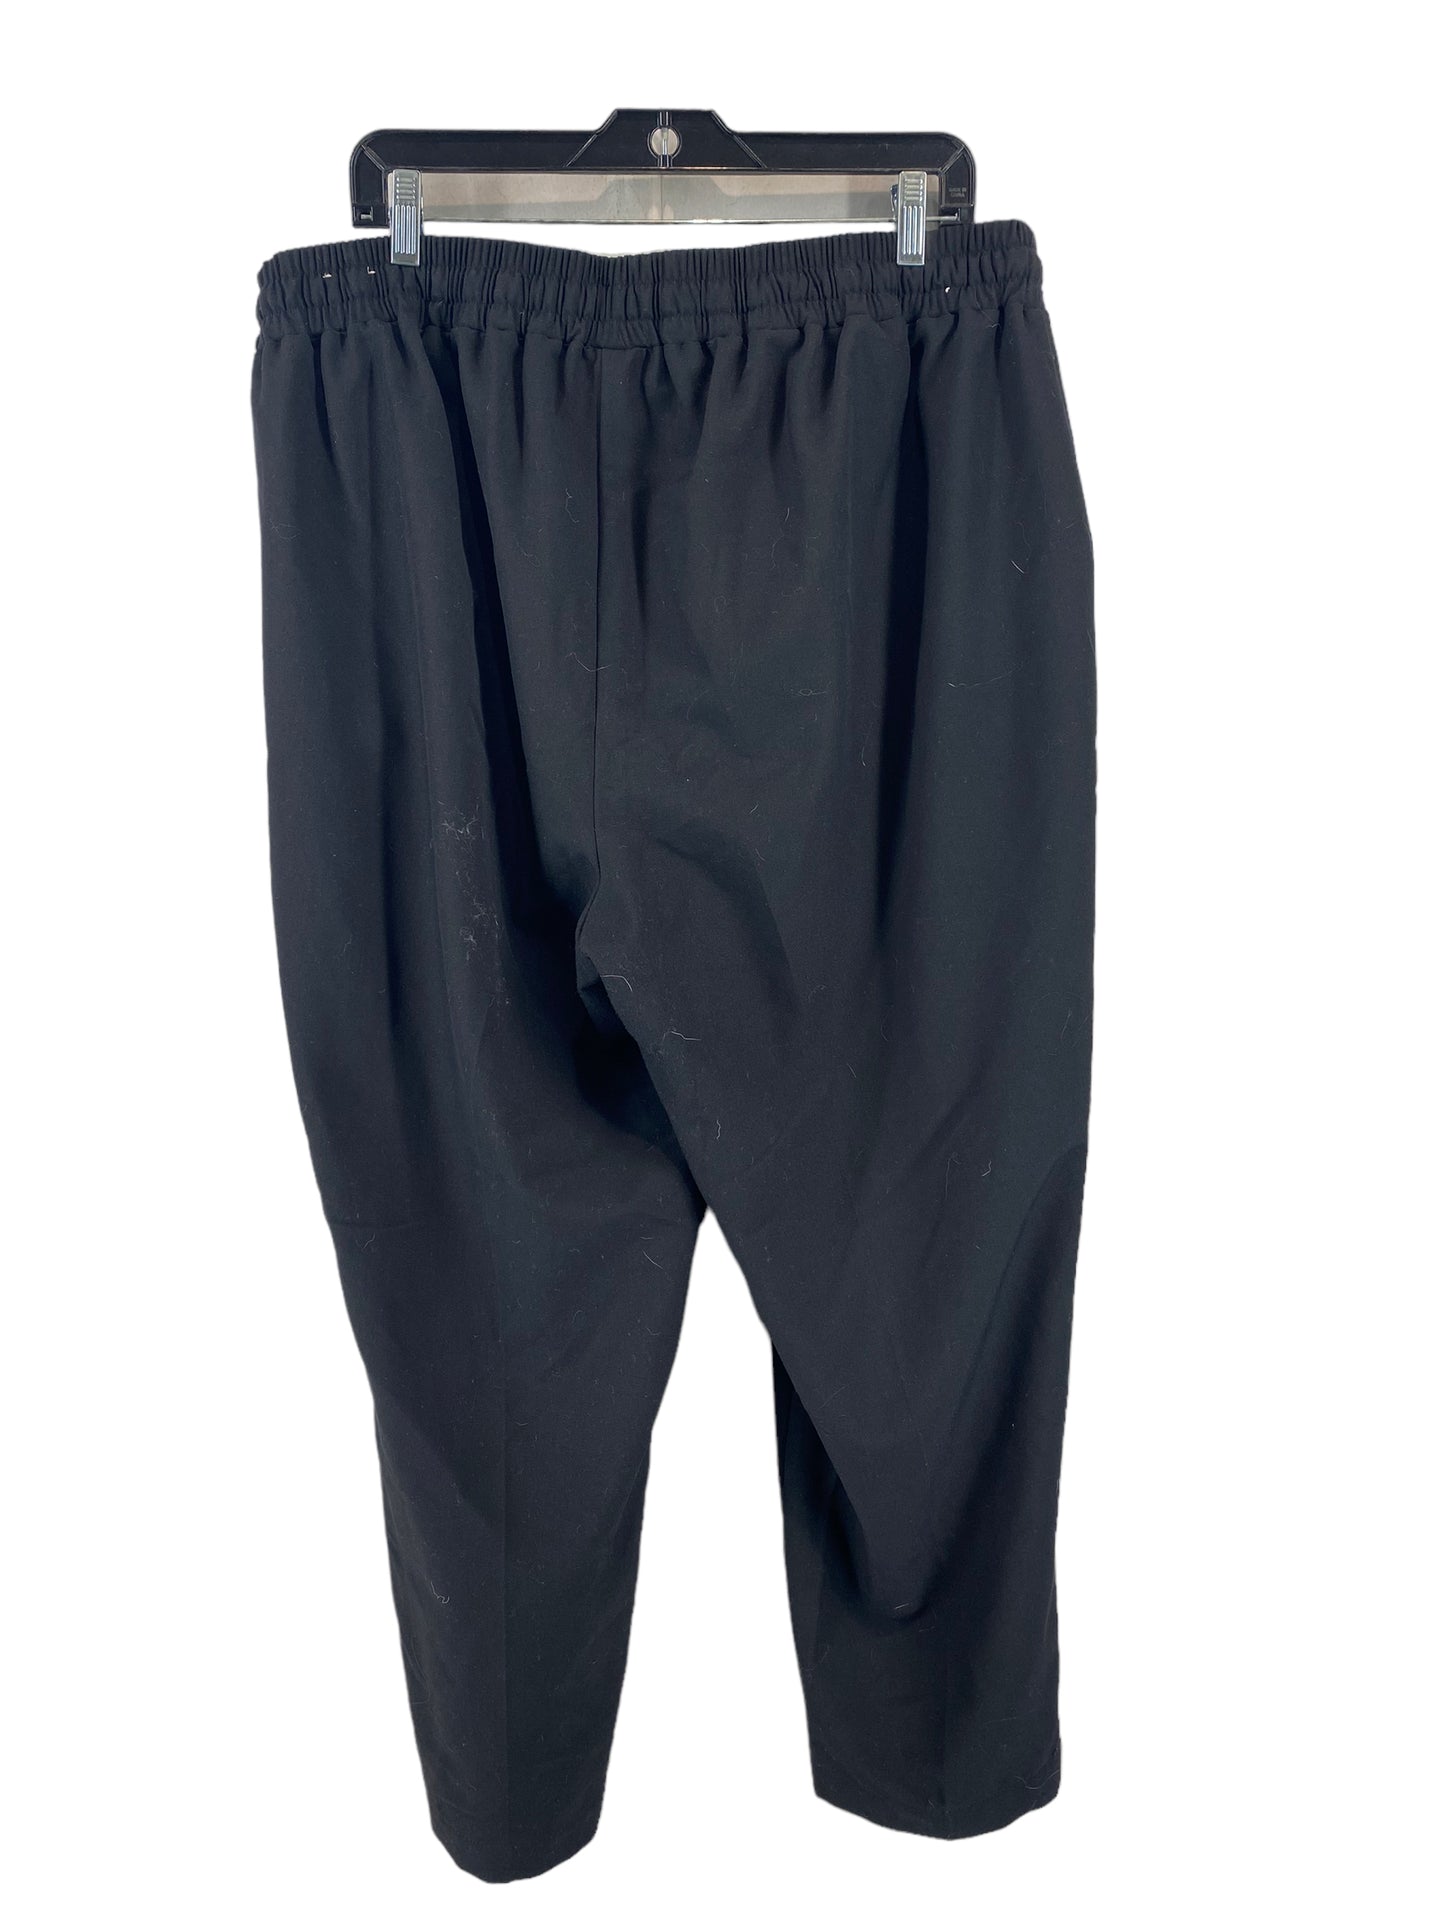 Pants Work/dress By Lane Bryant  Size: 18